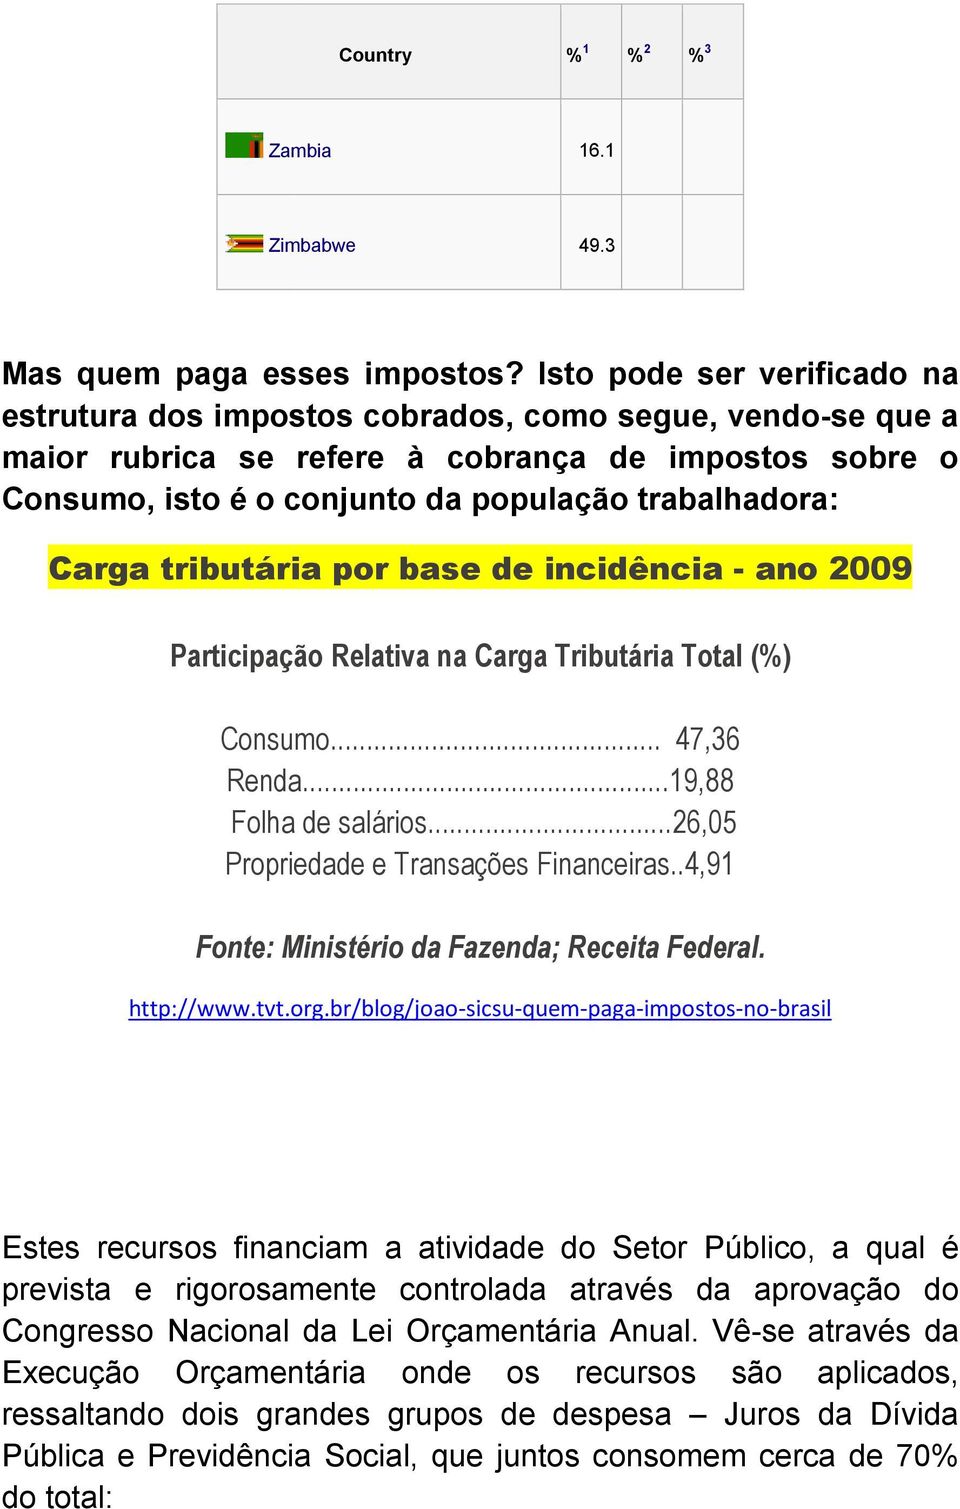 Carga tributária por base de incidência - ano 2009 Participação Relativa na Carga Tributária Total (%) Consumo... 47,36 Renda...19,88 Folha de salários...26,05 Propriedade e Transações Financeiras.